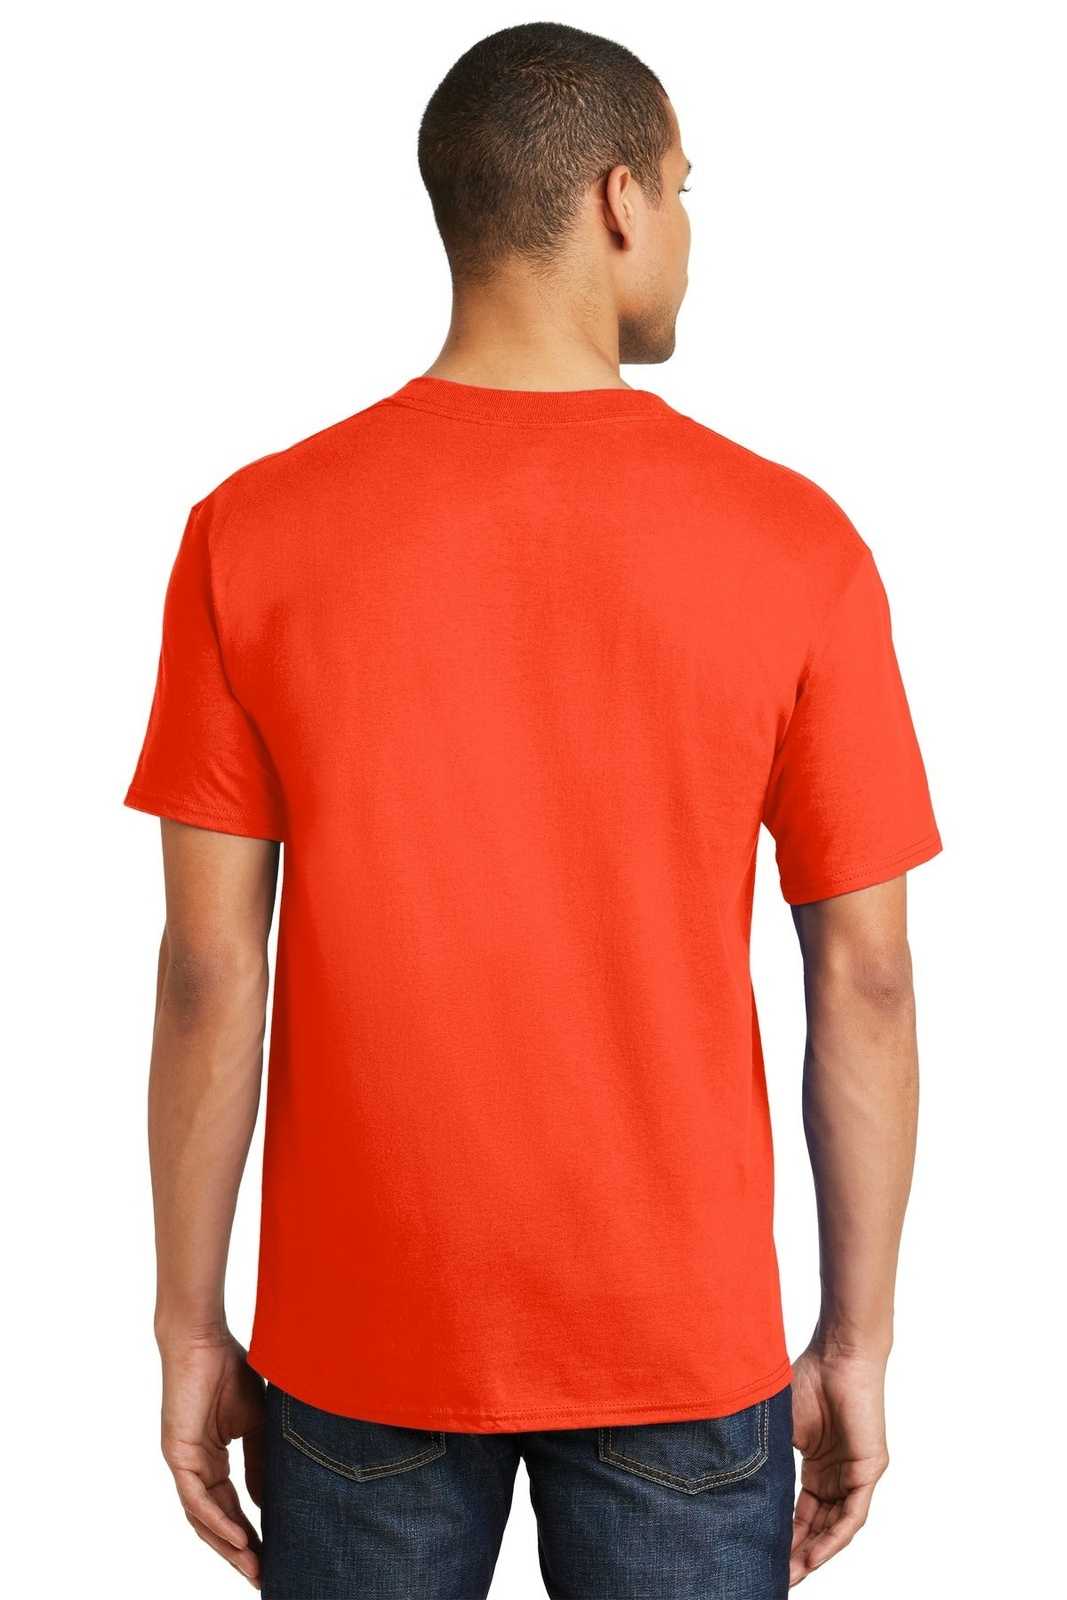 Hanes 5180 Beefy-T 100% Cotton T-Shirt - Orange - HIT a Double